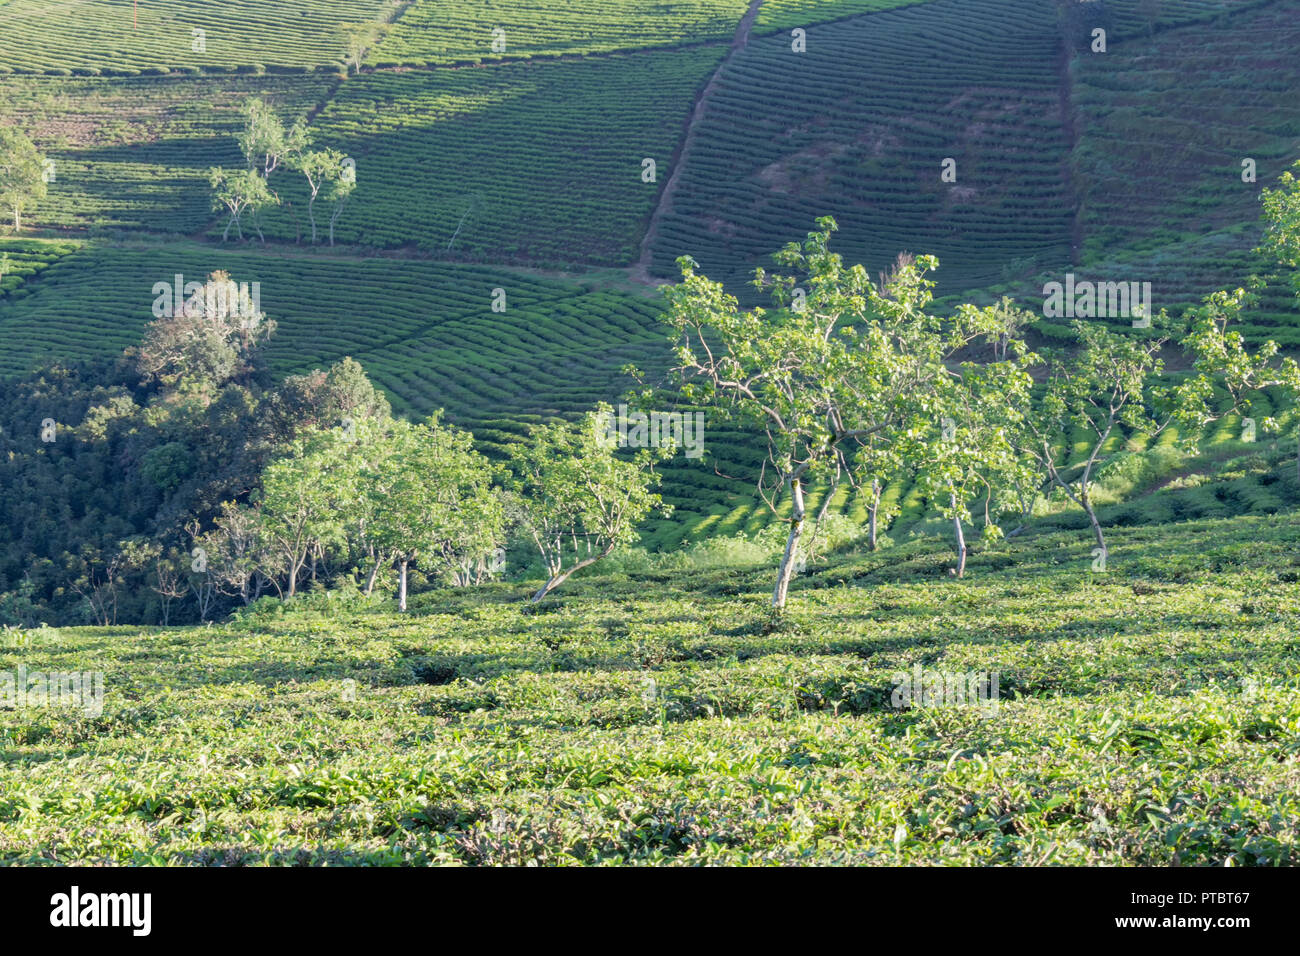 Contesto unico con fresche foglie di tè verde, tè hill, lonely tree e cielo blu. Immagine uso per la produzione di tè, pubblicità, design, marketing, pac Foto Stock